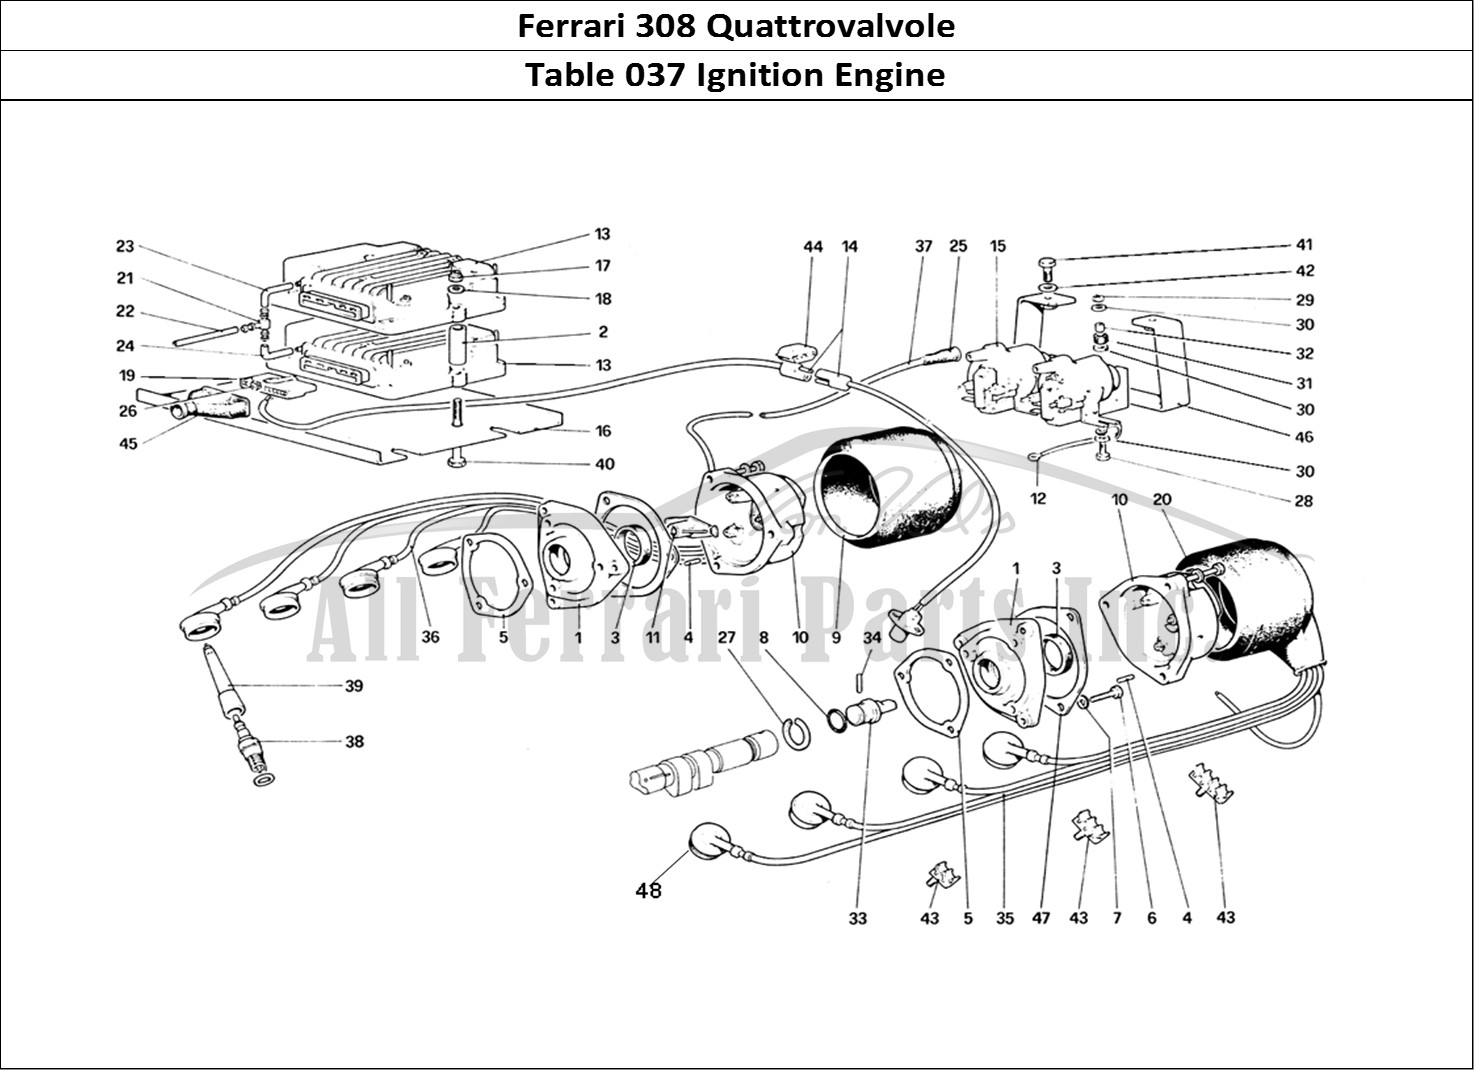 Ferrari Parts Ferrari 308 Quattrovalvole (1985) Page 037 Engine Ignition